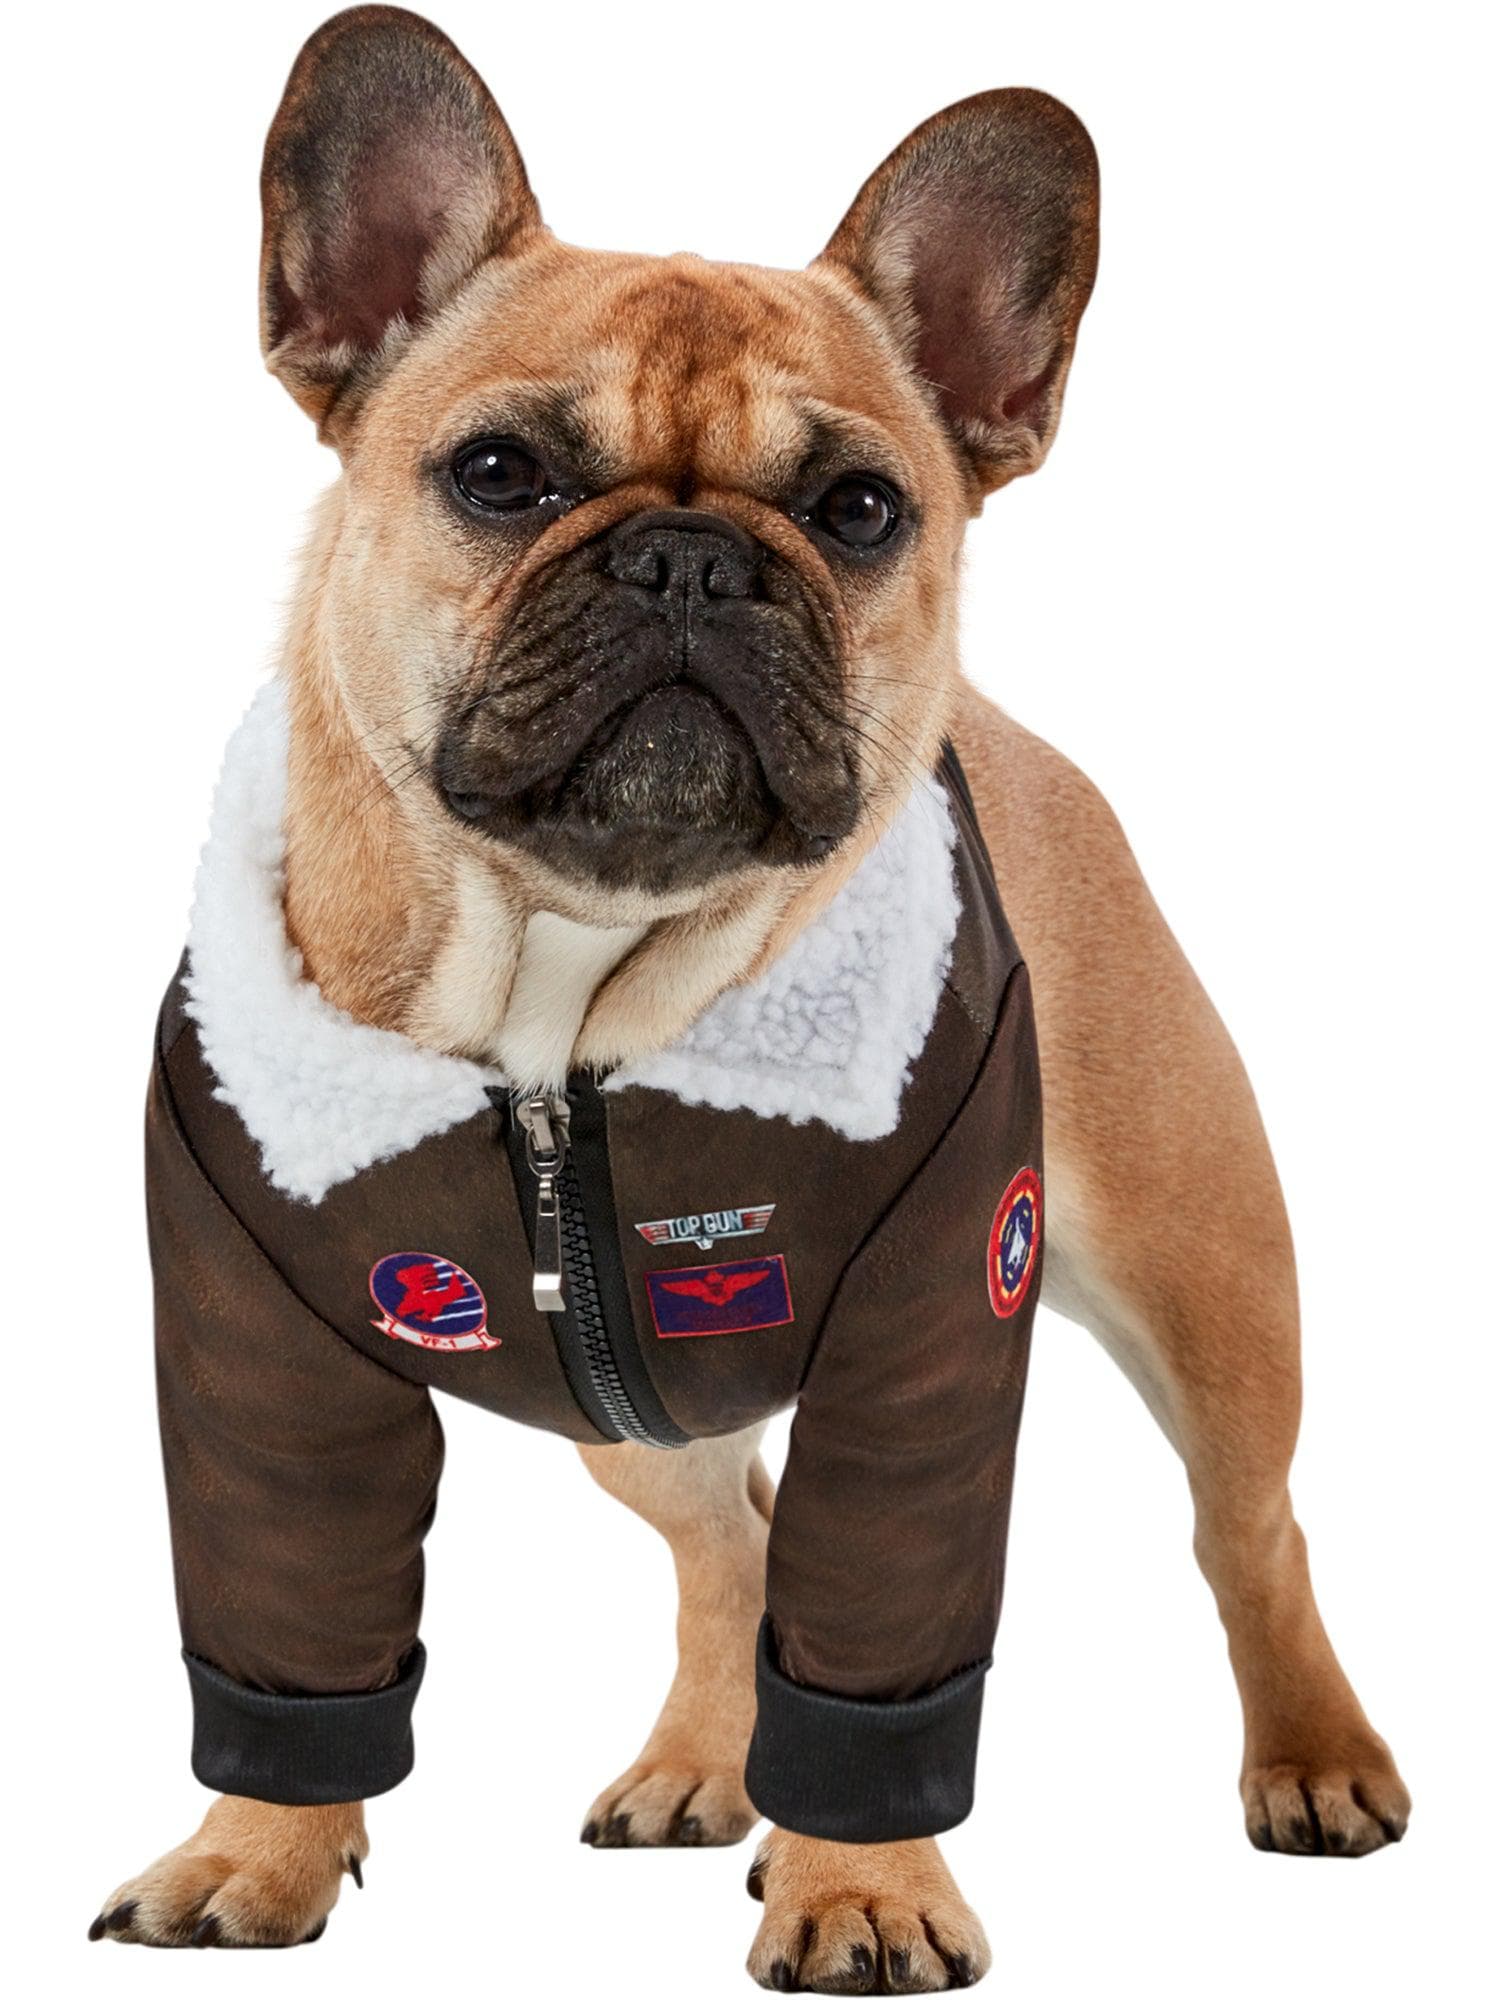 Top Gun Pet Jacket - costumes.com